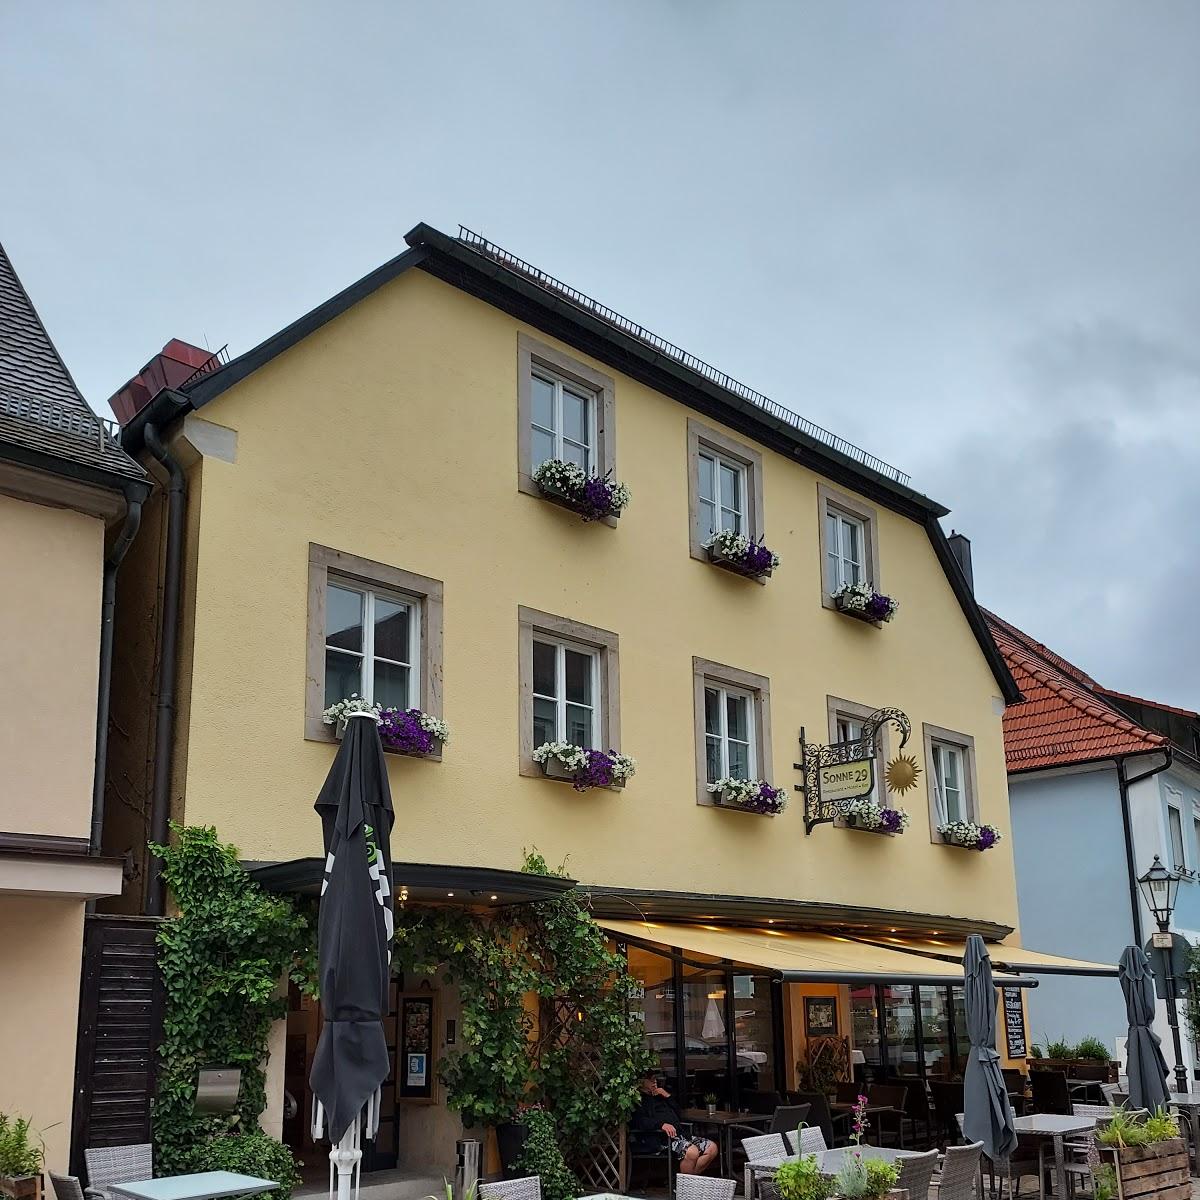 Restaurant "PENSION SWITTY" in Egloffstein